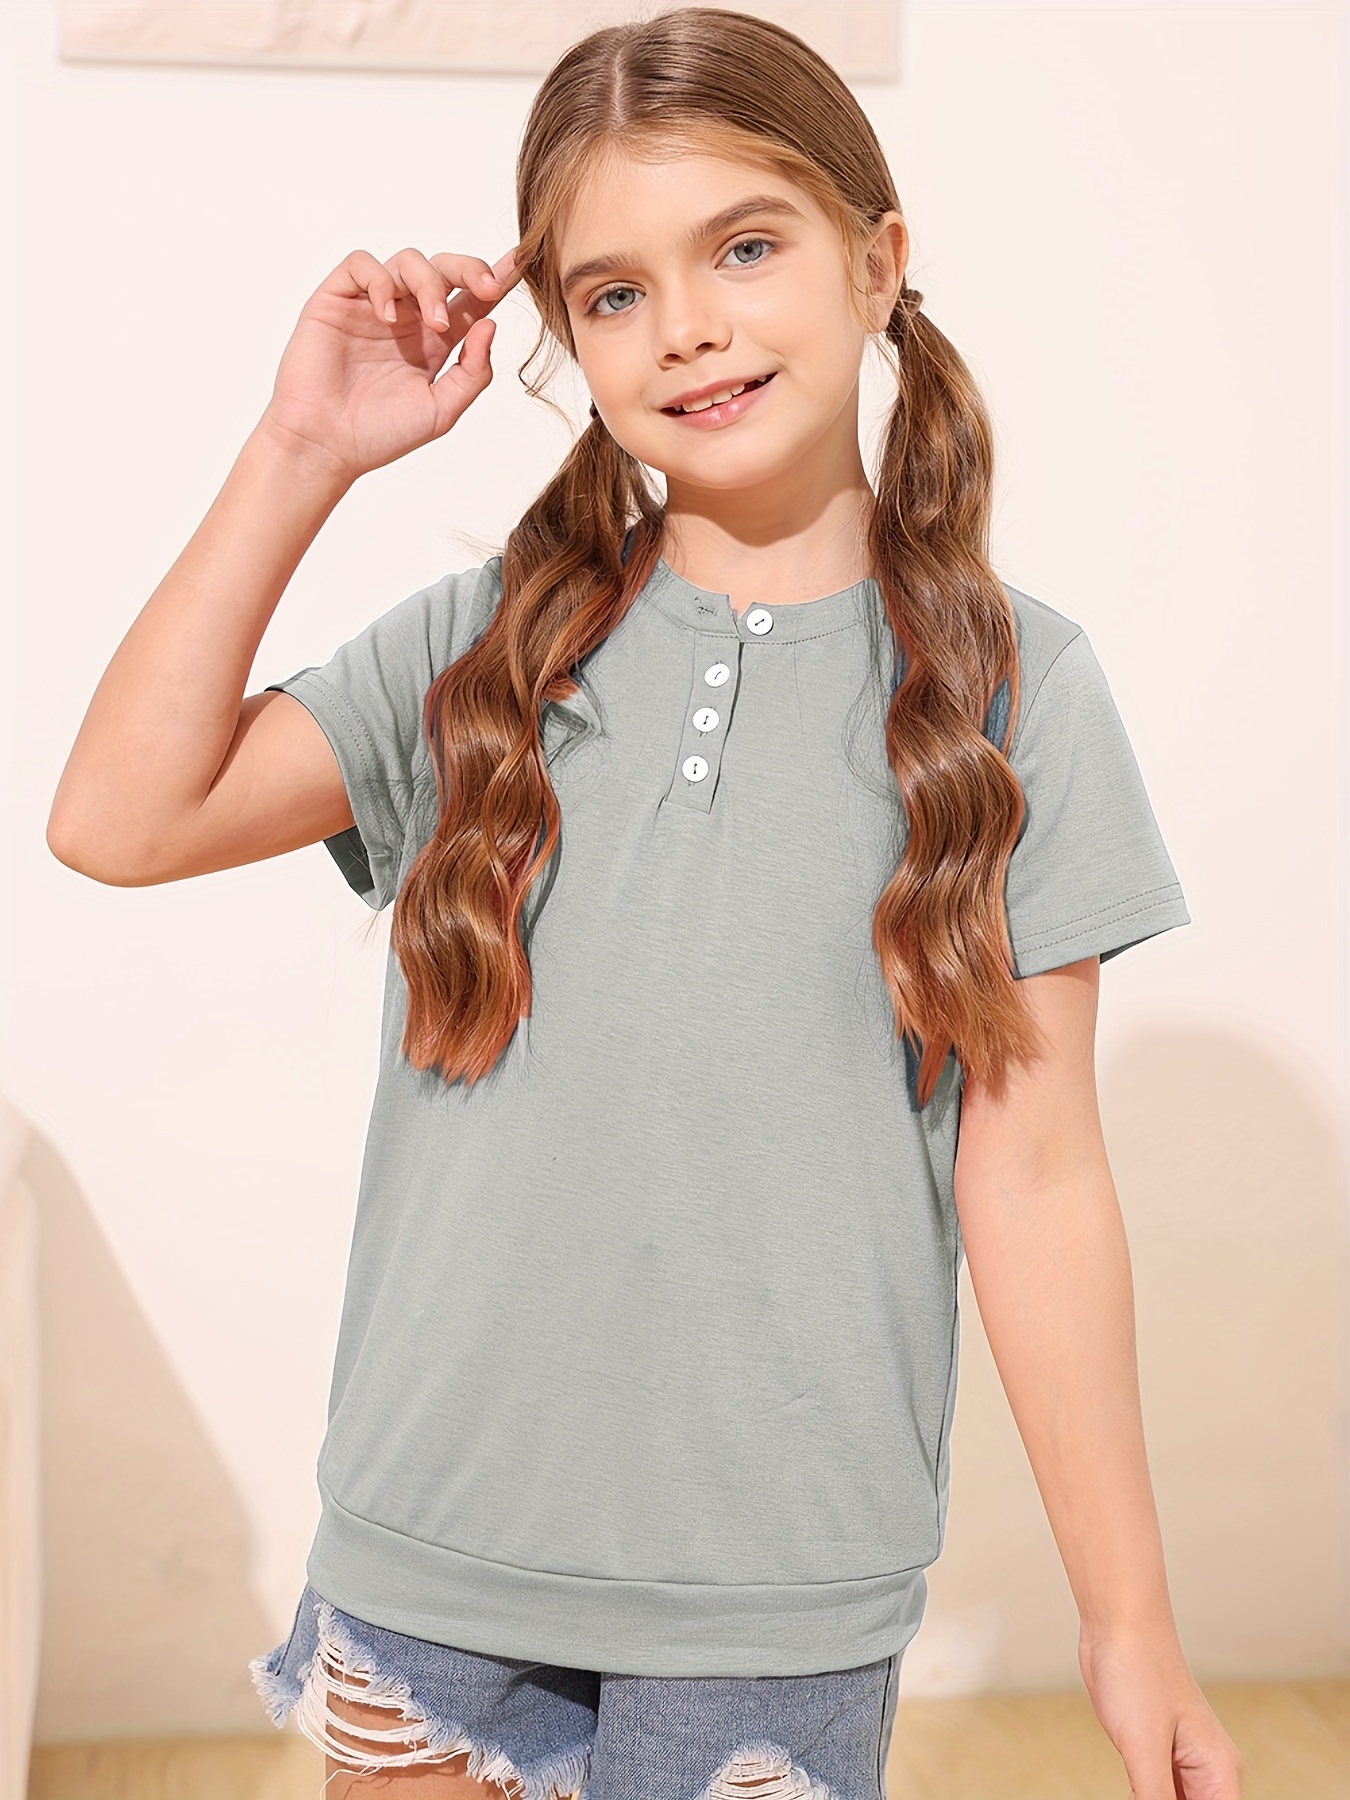 Dreamstar Camiseta para niña – Paquete de 3 camisetas básicas de manga  corta con cuello redondo para niñas – Camisetas esenciales para niños  (talla